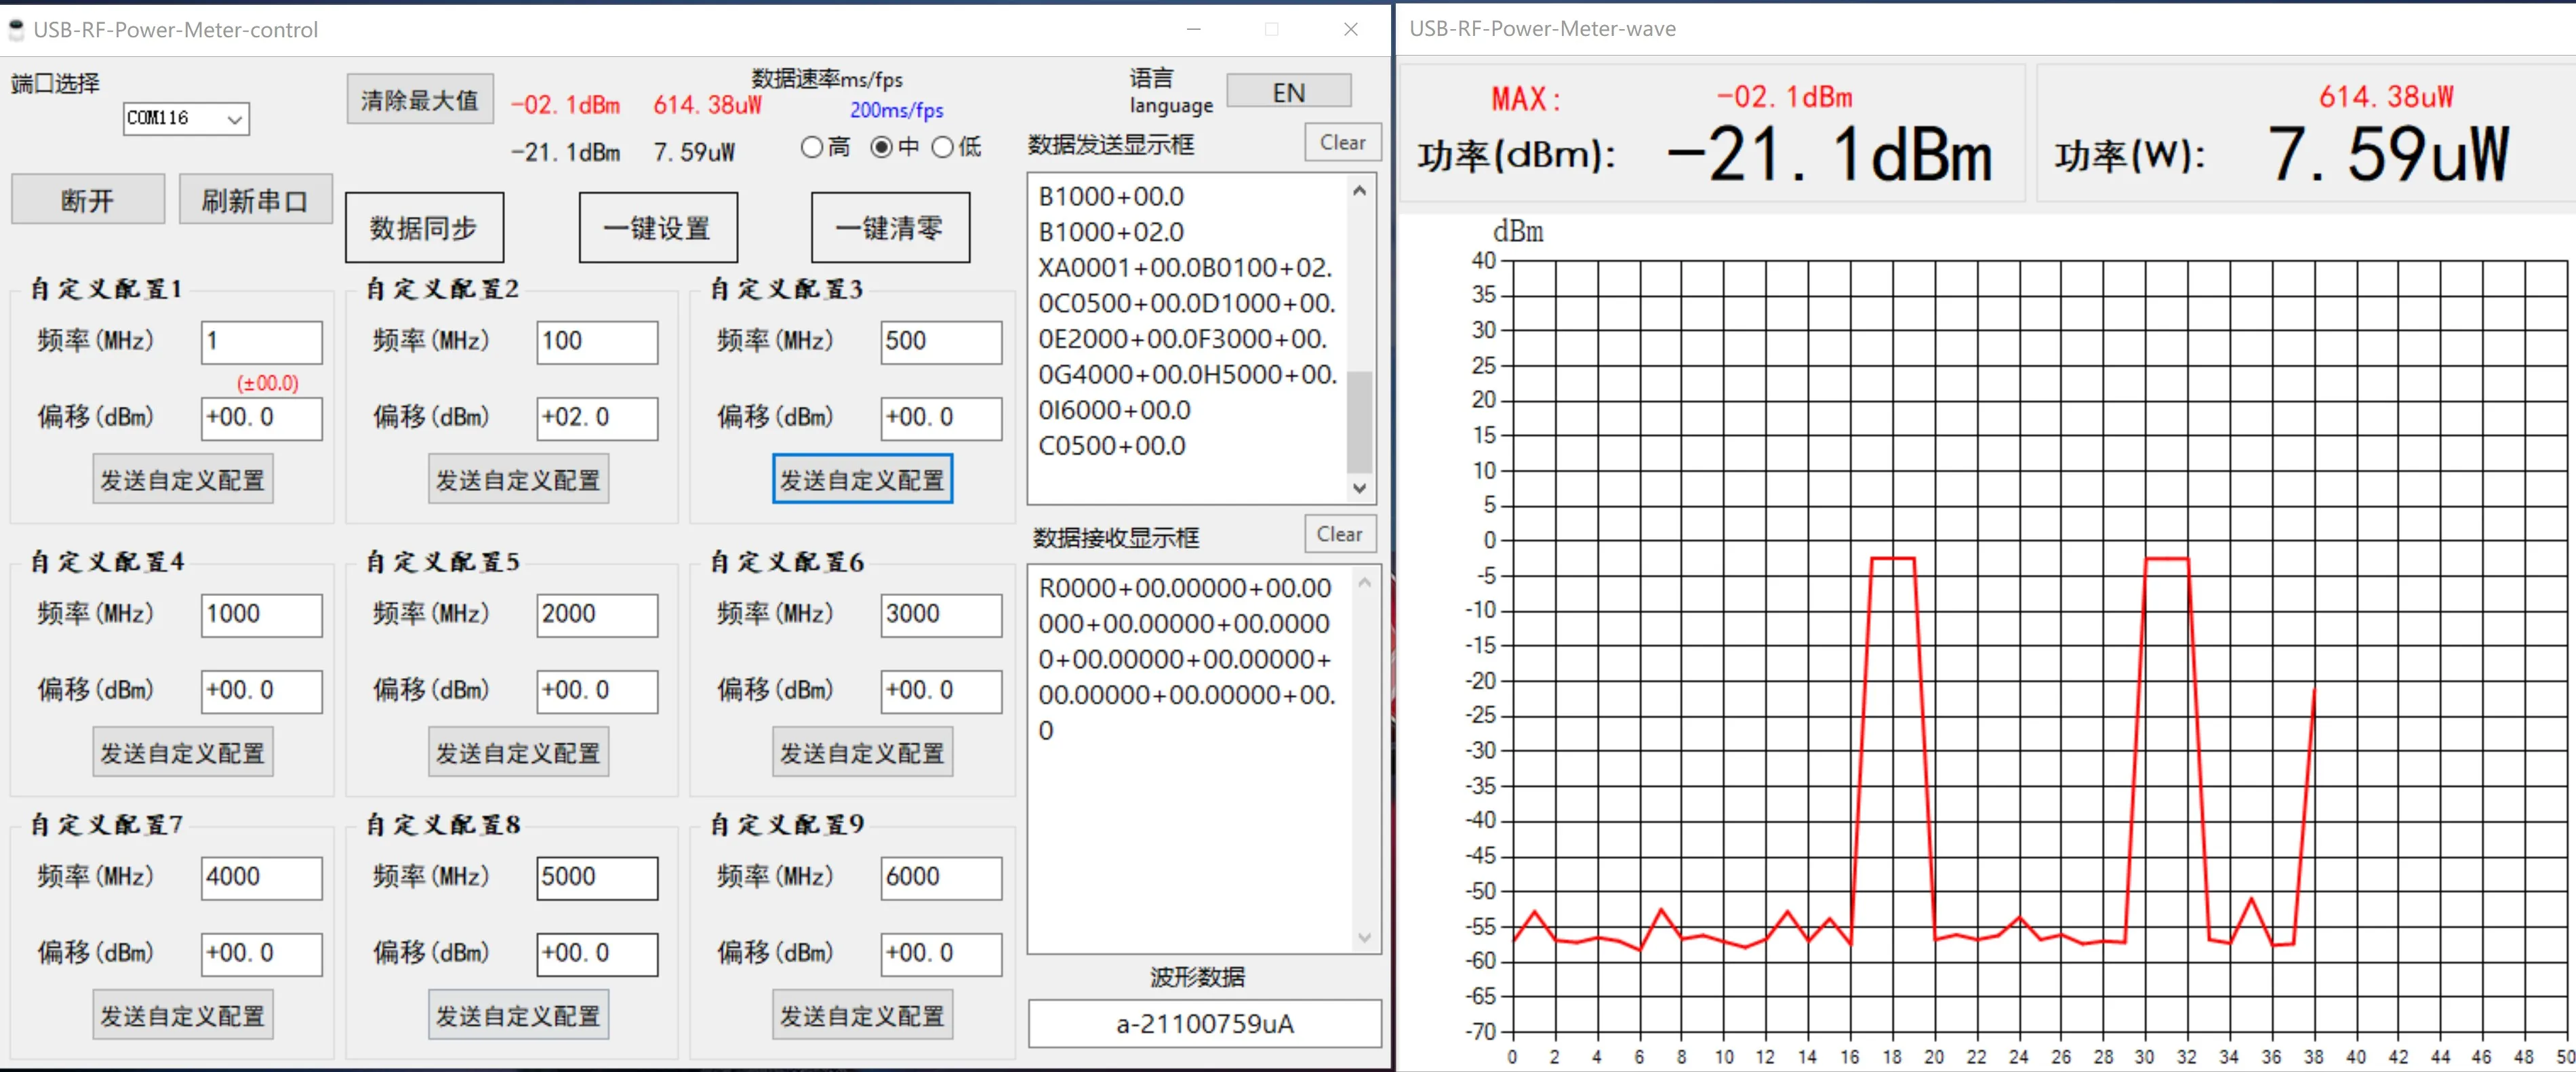 100K-10GHZ USB RF כוח מטר -55~+30dBm מתכוונן הנחתה ערך + אנטנה + Attenuator עבור רדיו מגבר - 4